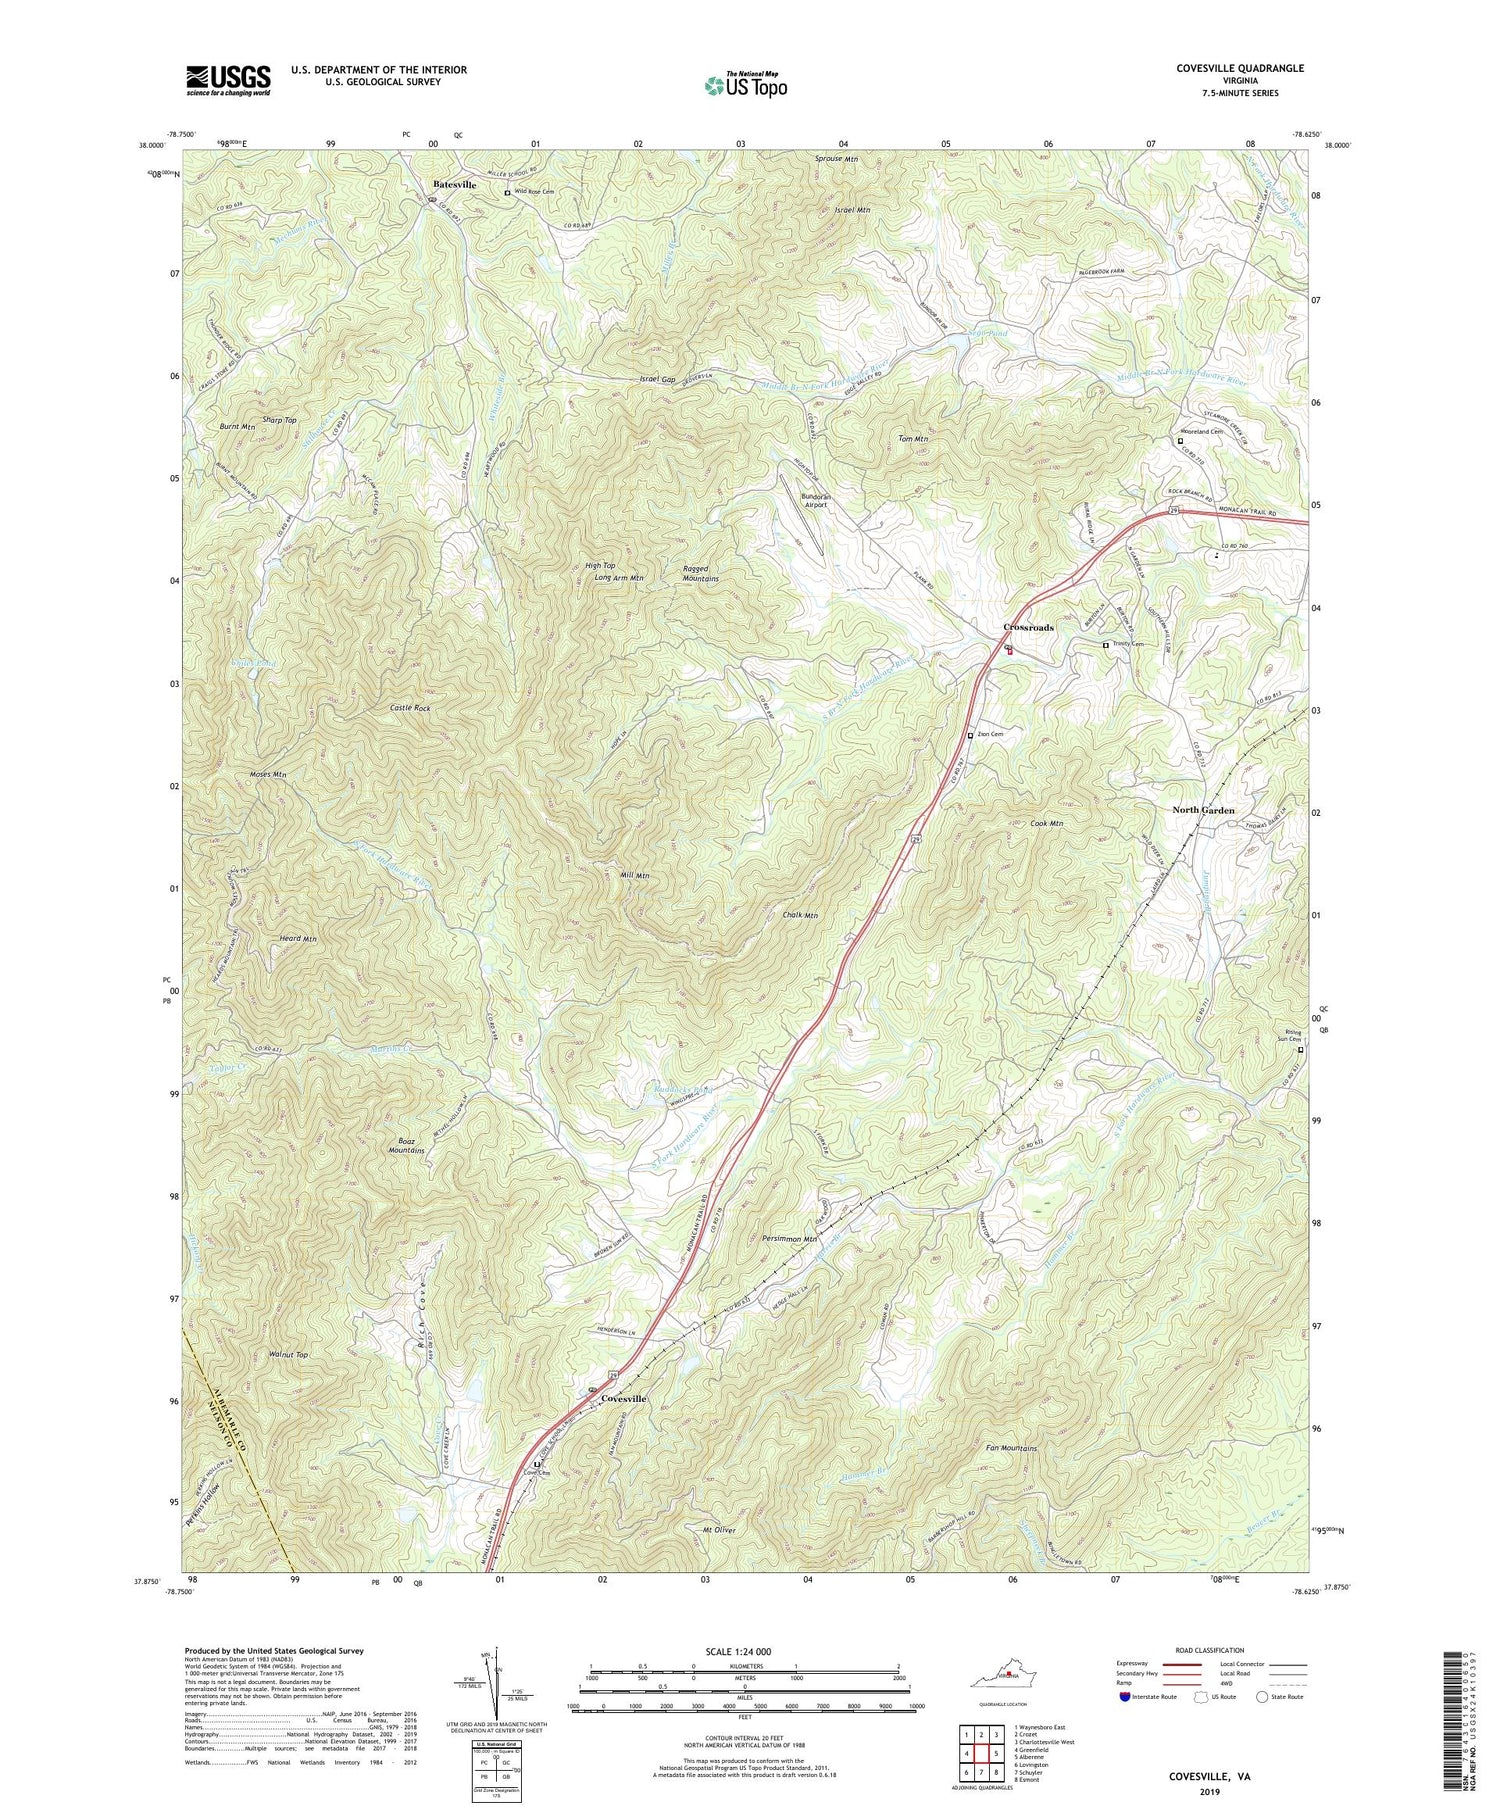 Covesville Virginia US Topo Map Image